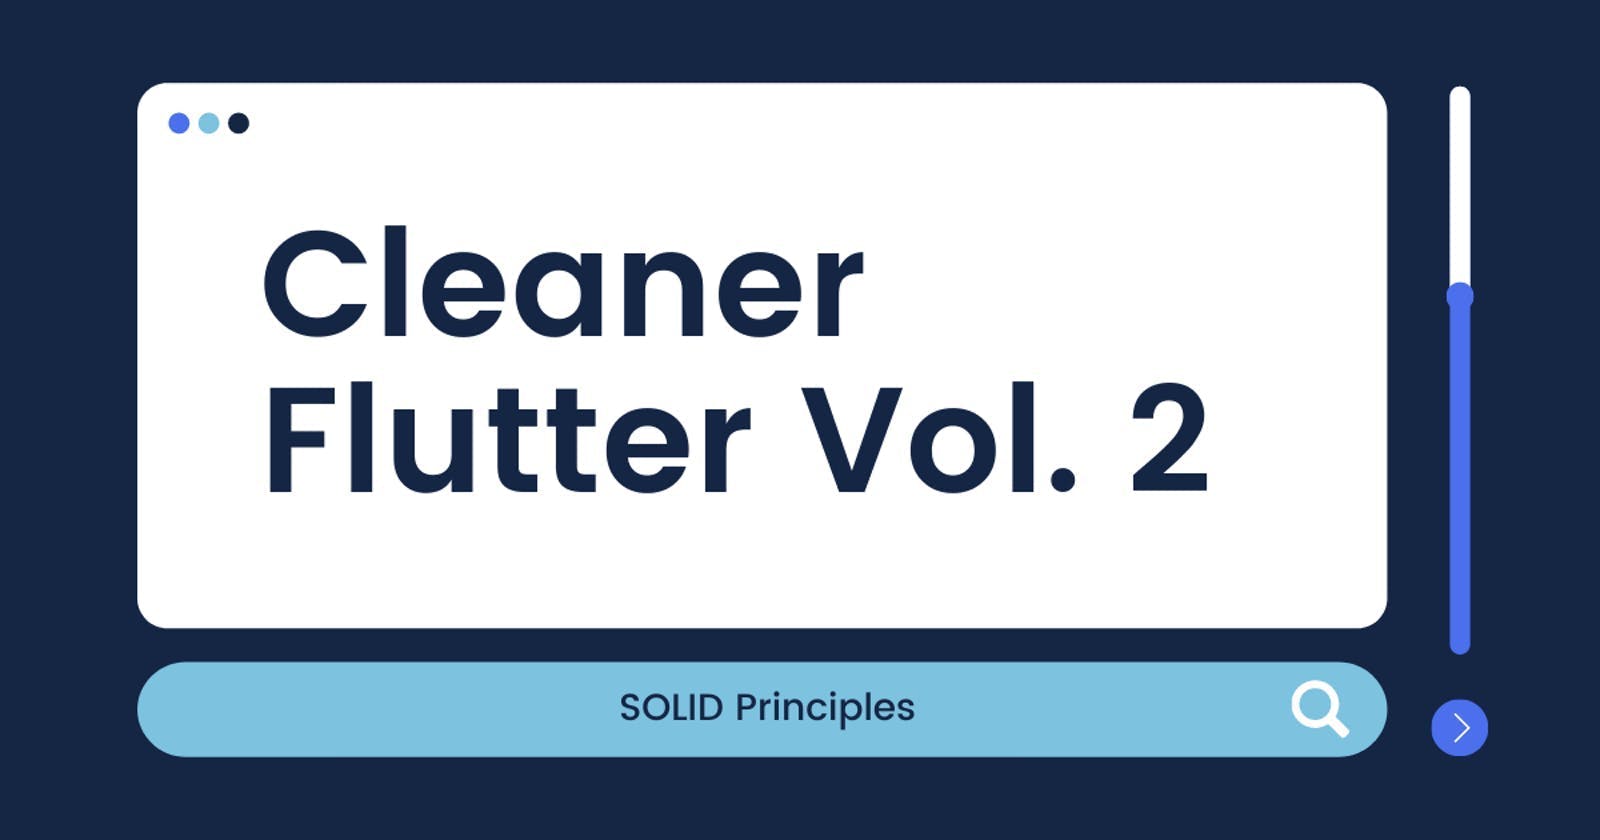 Cleaner Flutter Vol. 2: SOLID principles